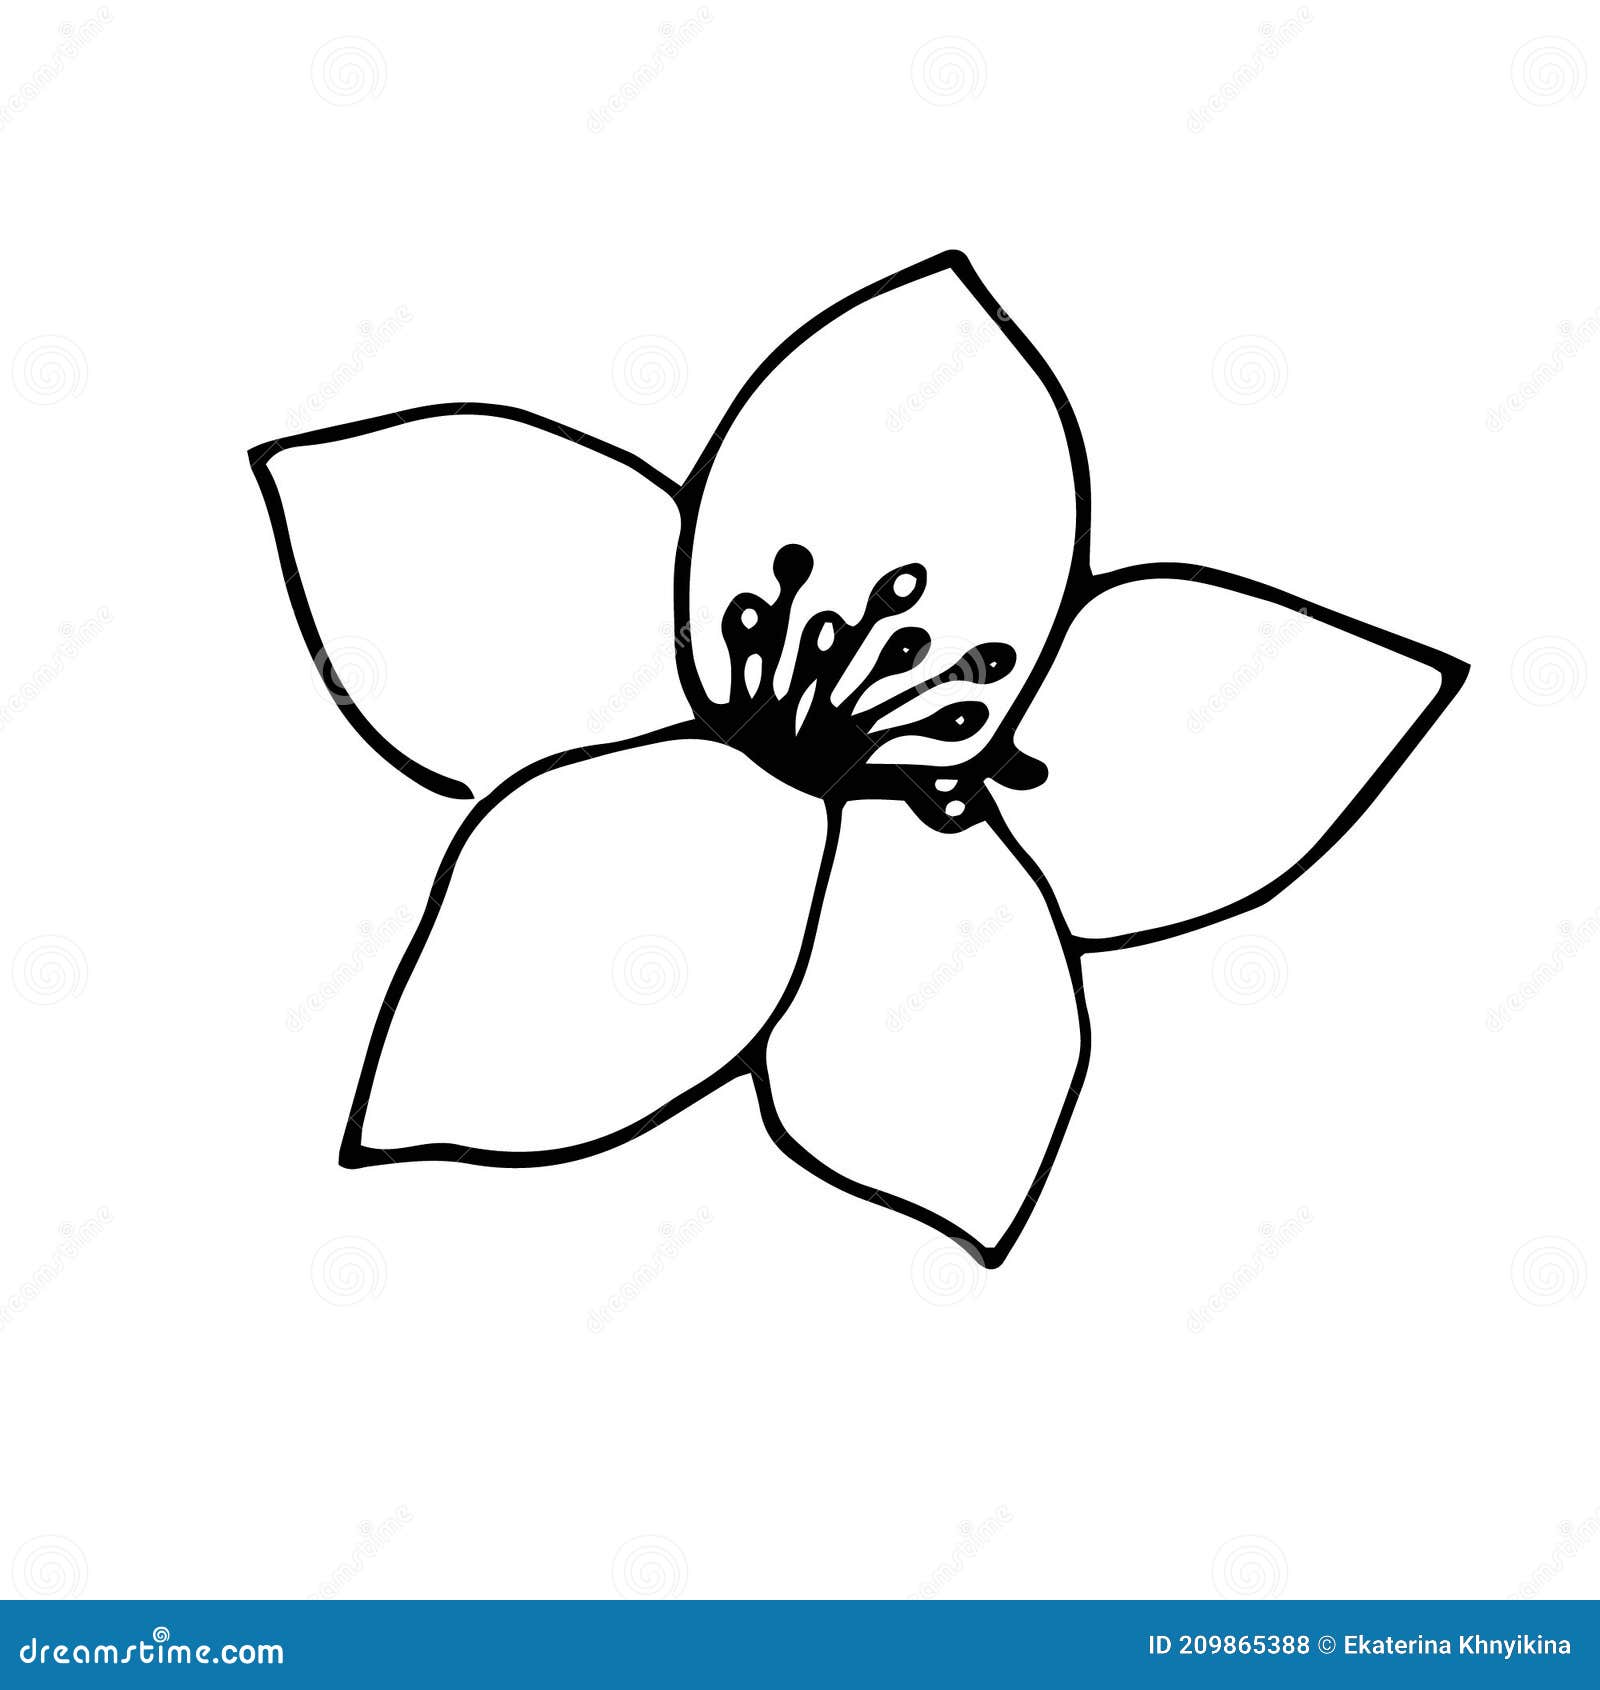 How to draw Jasmine Flower - YouTube